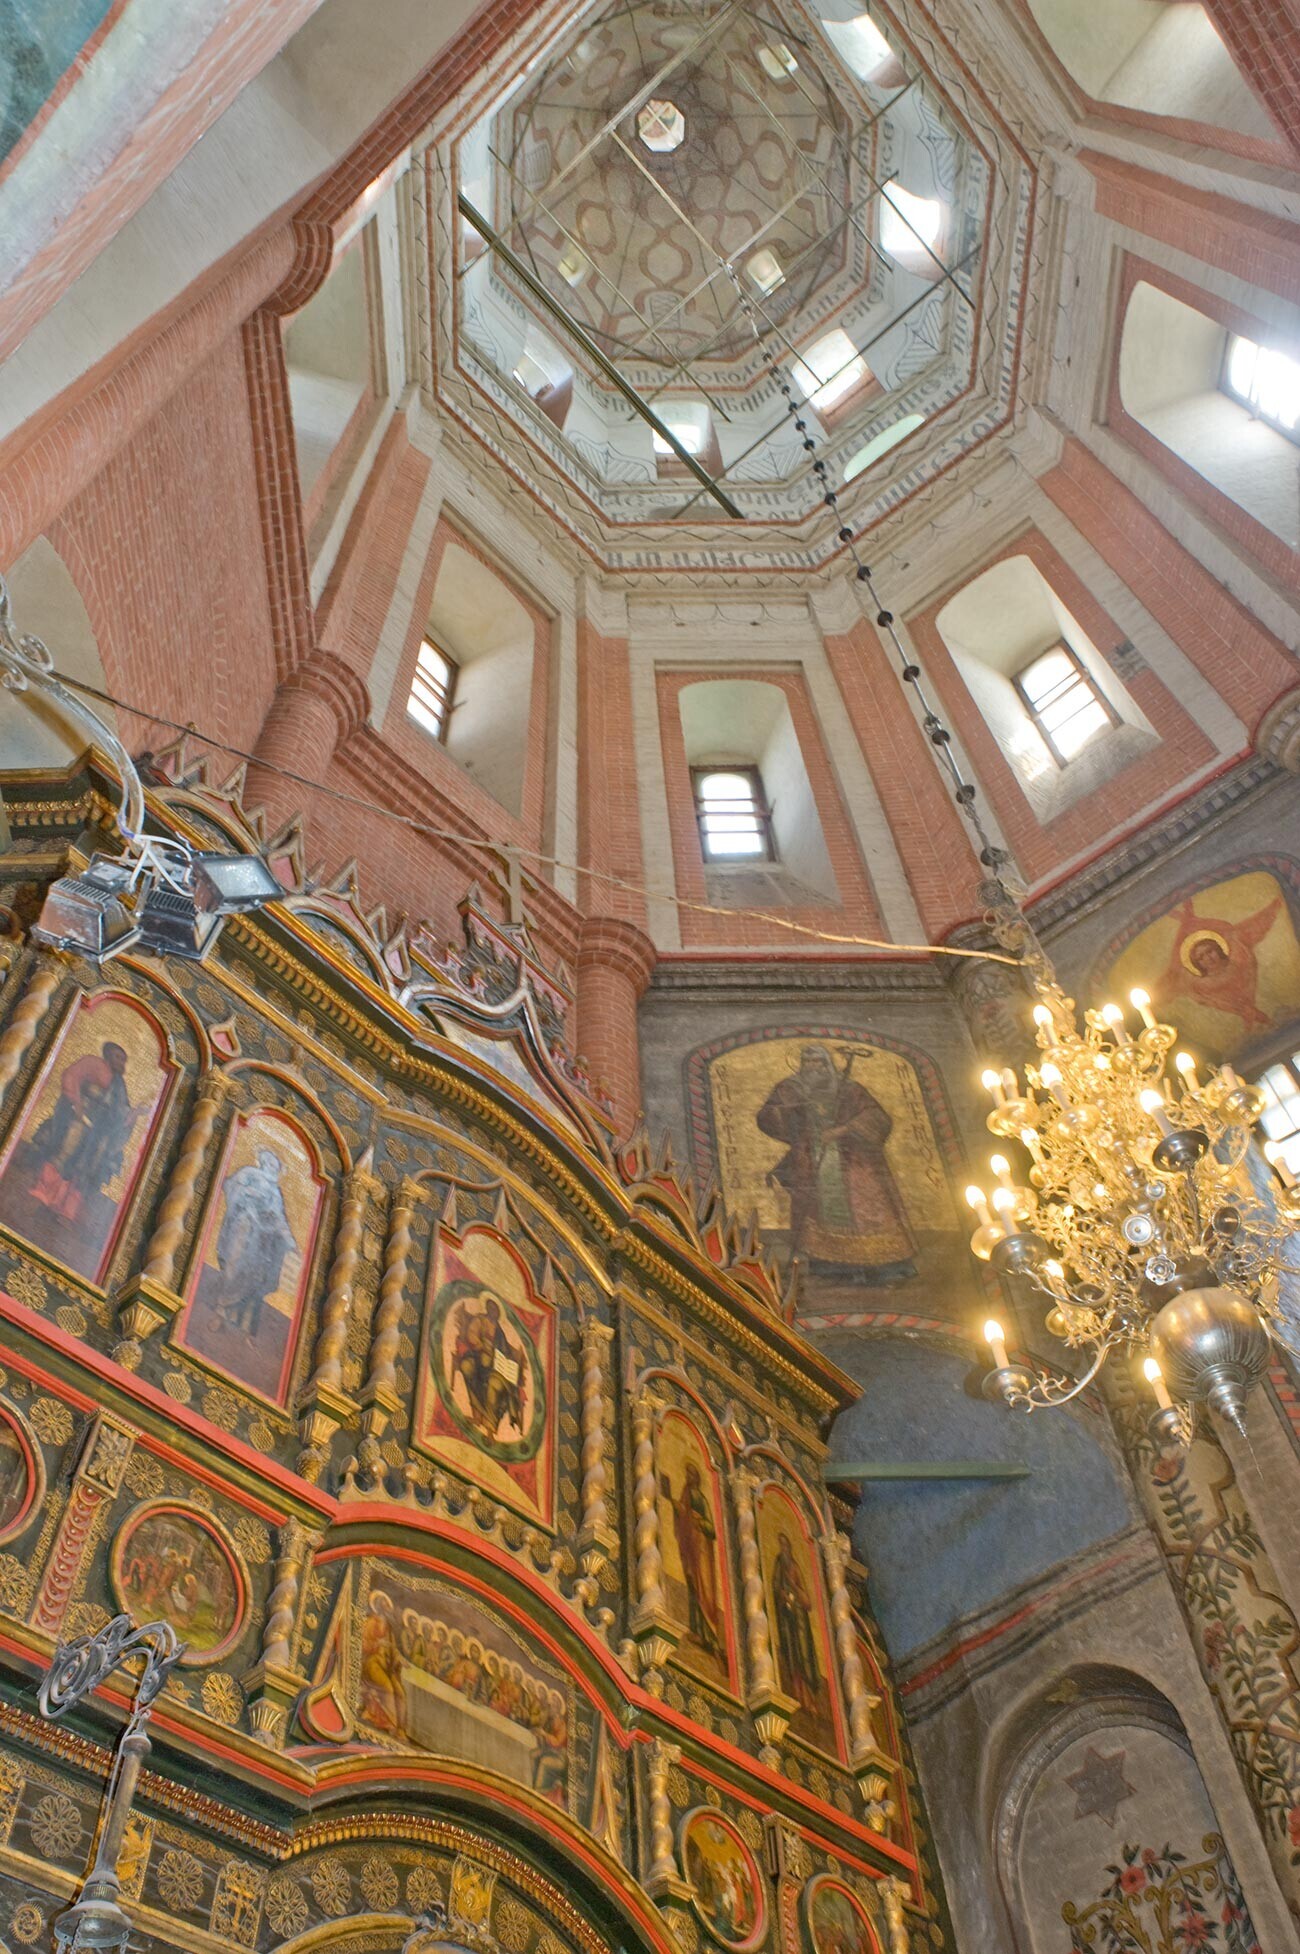 Katedrala Vasilija Blaženega. Notranjost Pokrovske cerkve z ikonostasom in stolpom. 2. junij 2012
